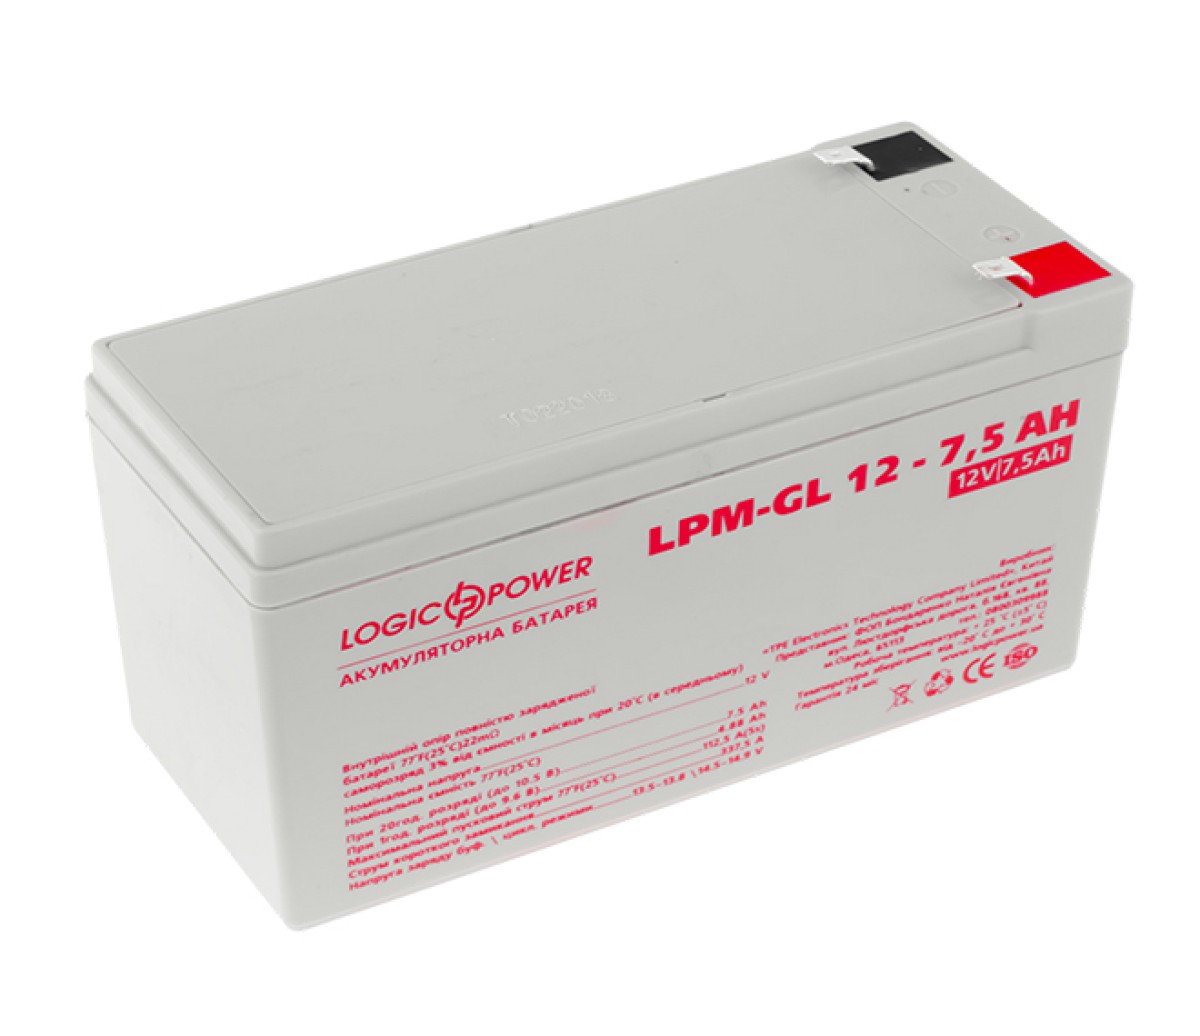 Аккумулятор гелевый LPM-GL 12 - 7,5 AH 256_221.jpg